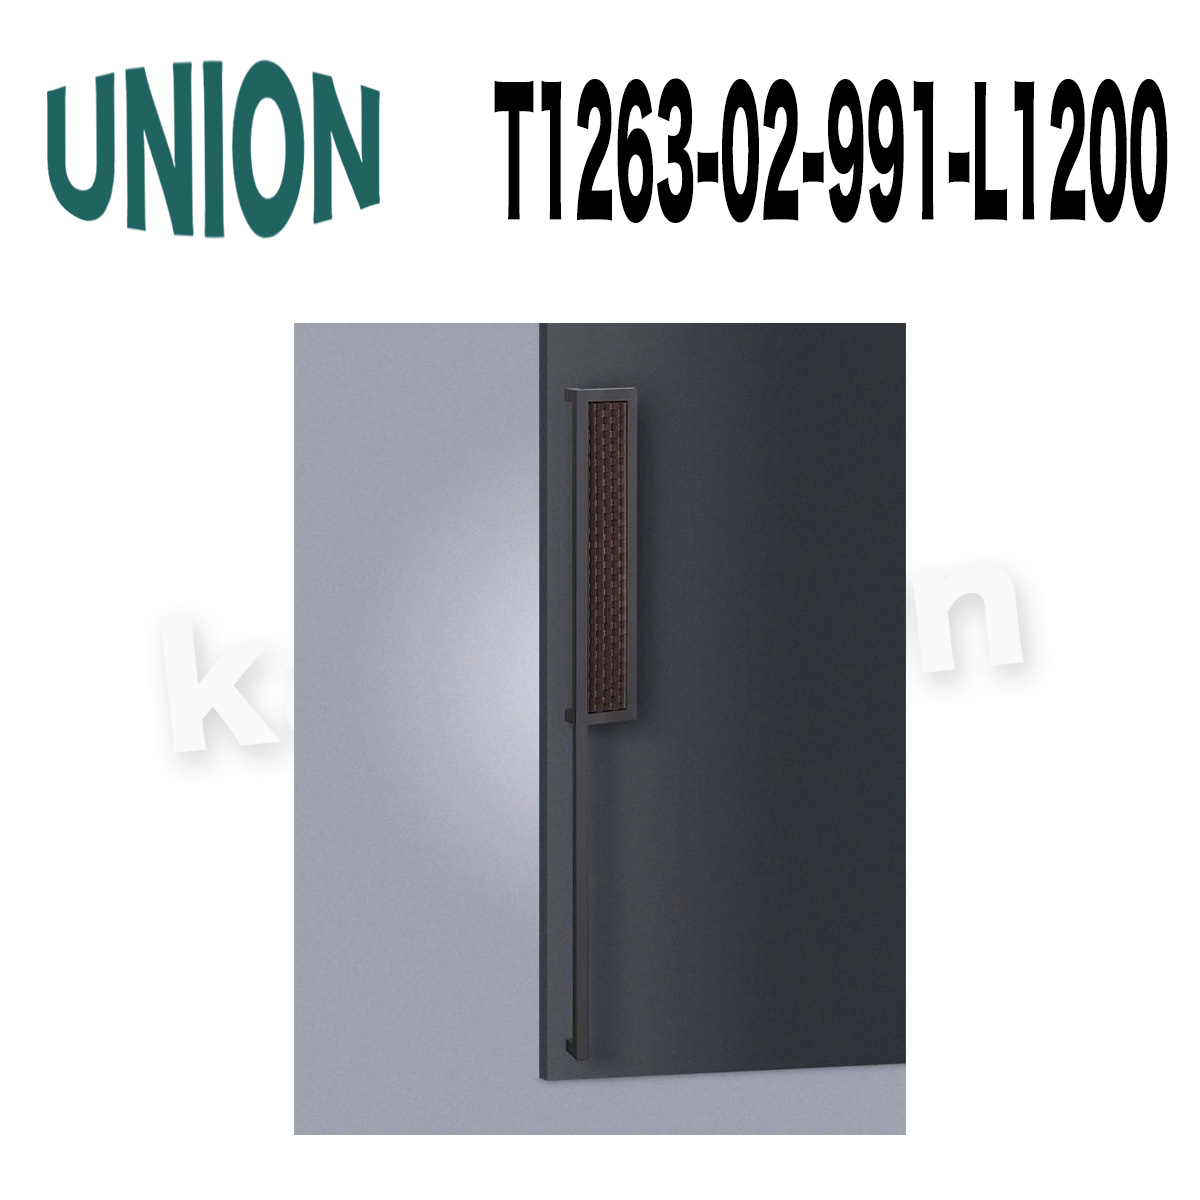 UNION【ユニオン】T1263-01-991-L1200[ドアハンドル]押し棒（内外